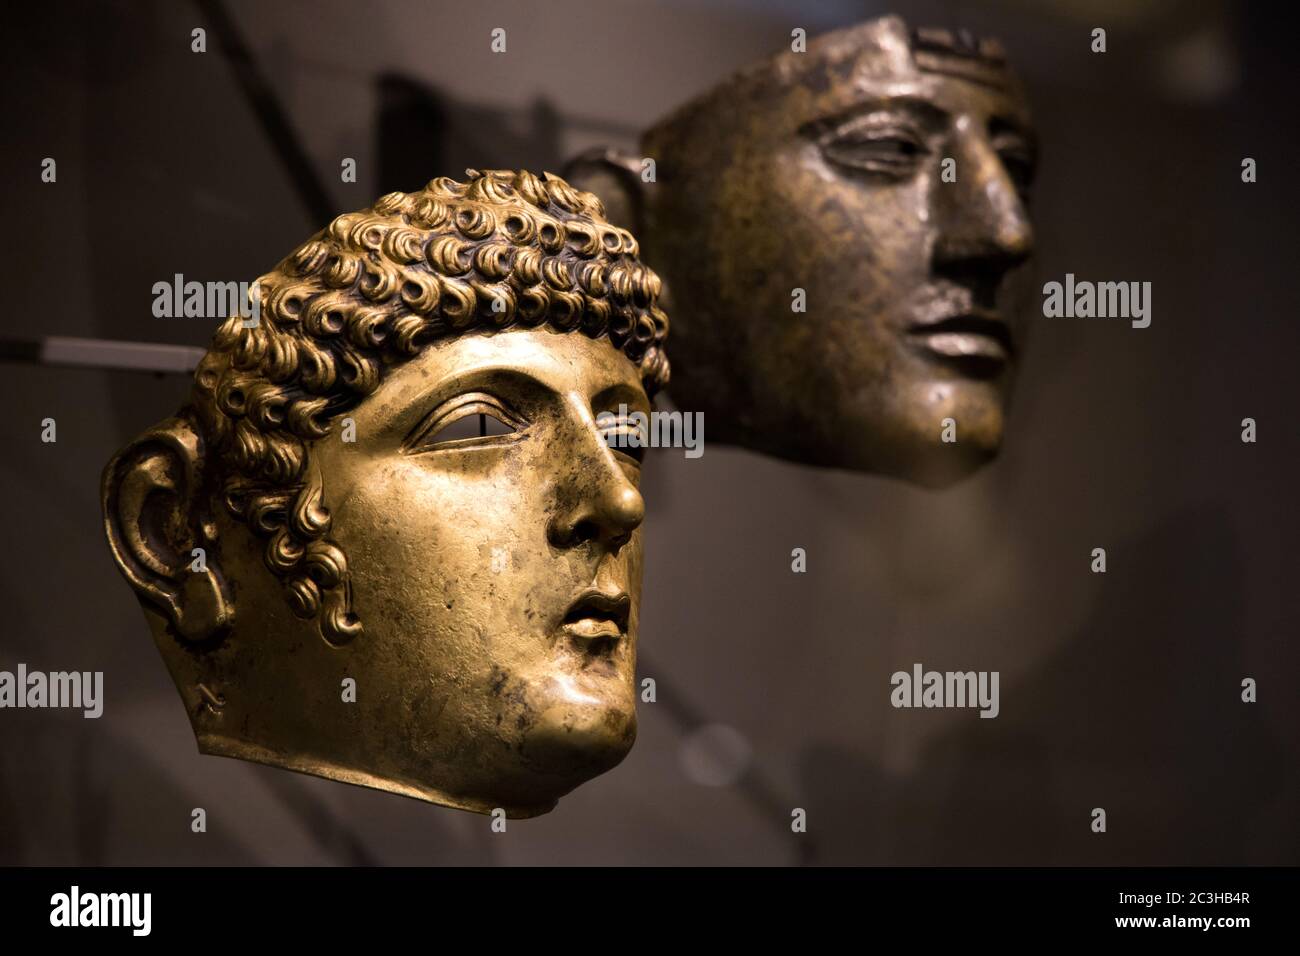 Leiden, Paesi Bassi - 04 GENNAIO 2020: Primo piano di vecchie maschere visiere dell'antica Roma trovate nei Paesi Bassi. Antico Impero Romano. Foto Stock